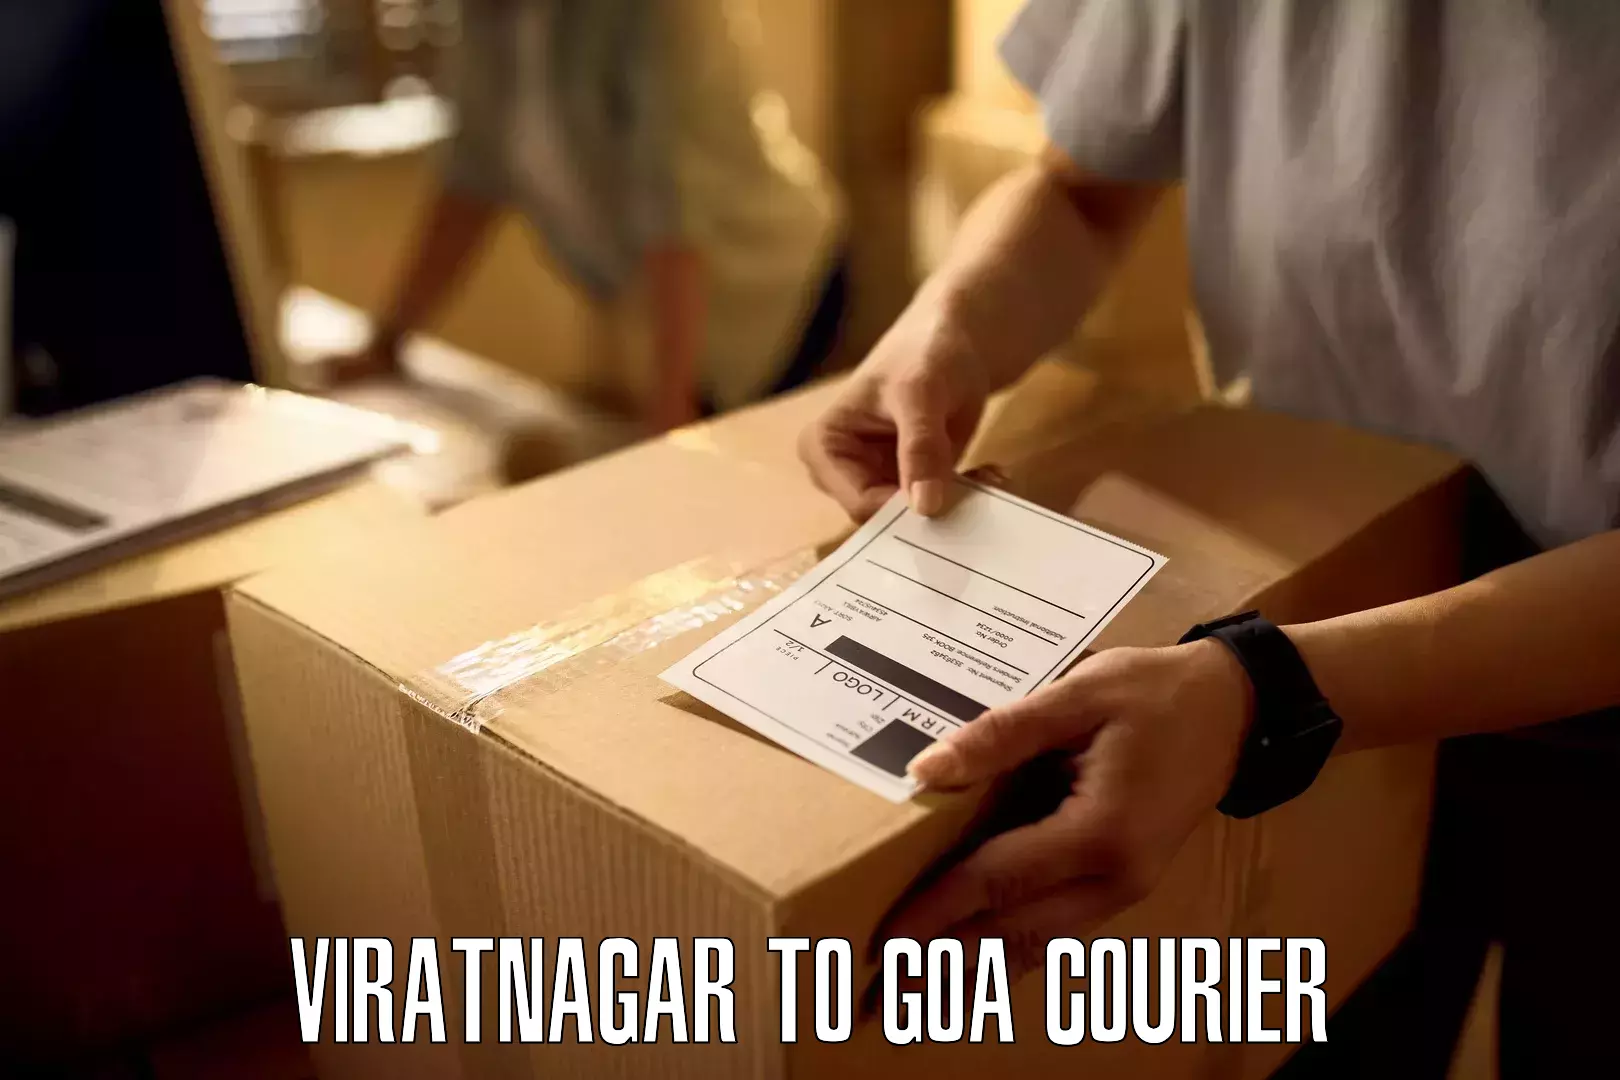 Speedy delivery service Viratnagar to Mormugao Port